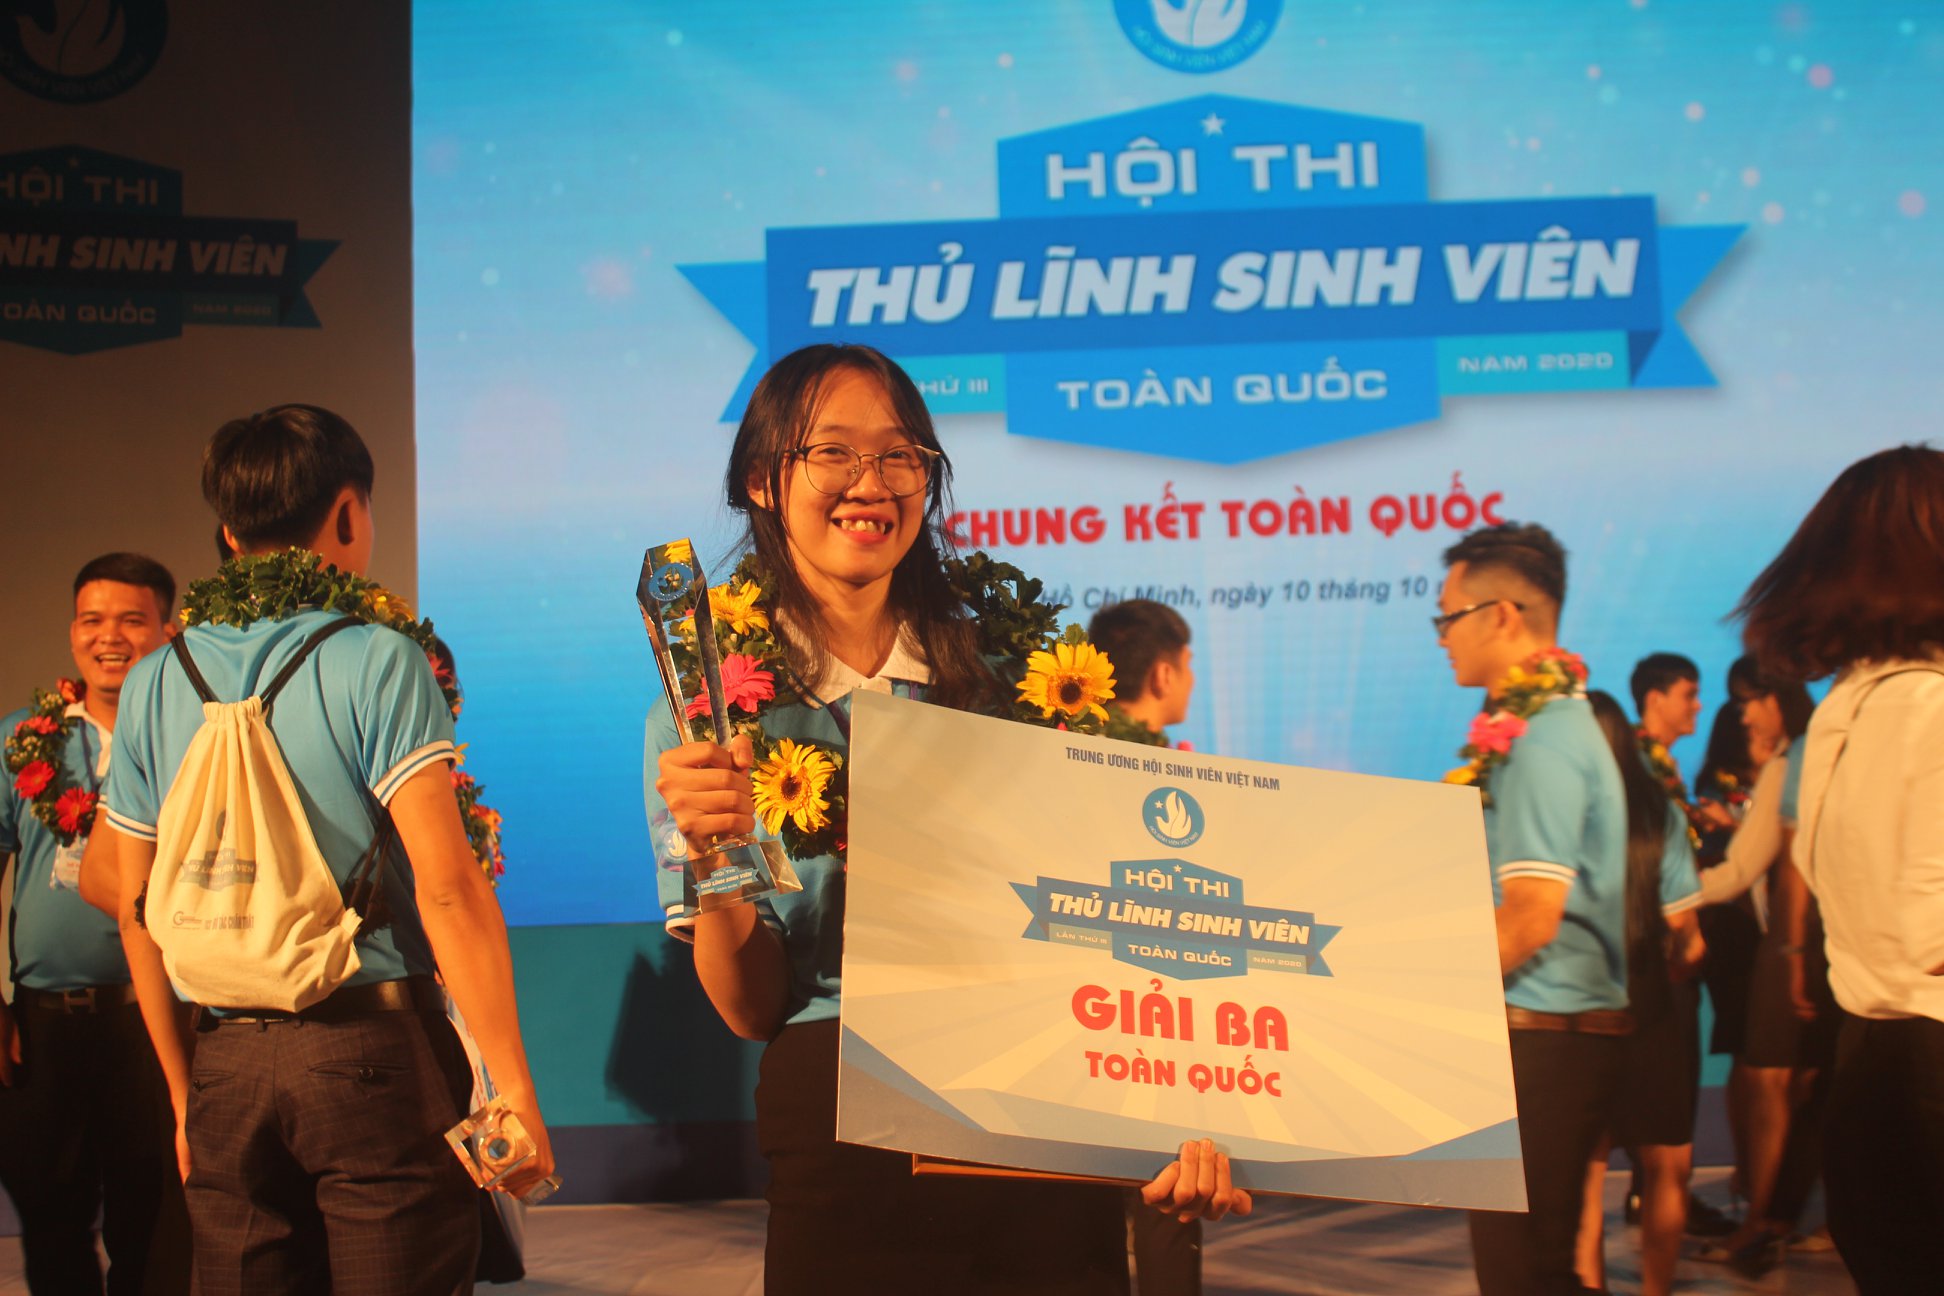 Chủ tịch Hội sinh viên Trương Diễm Linh đạt Giải Ba hội thi Thủ lĩnh sinh viên toàn quốc